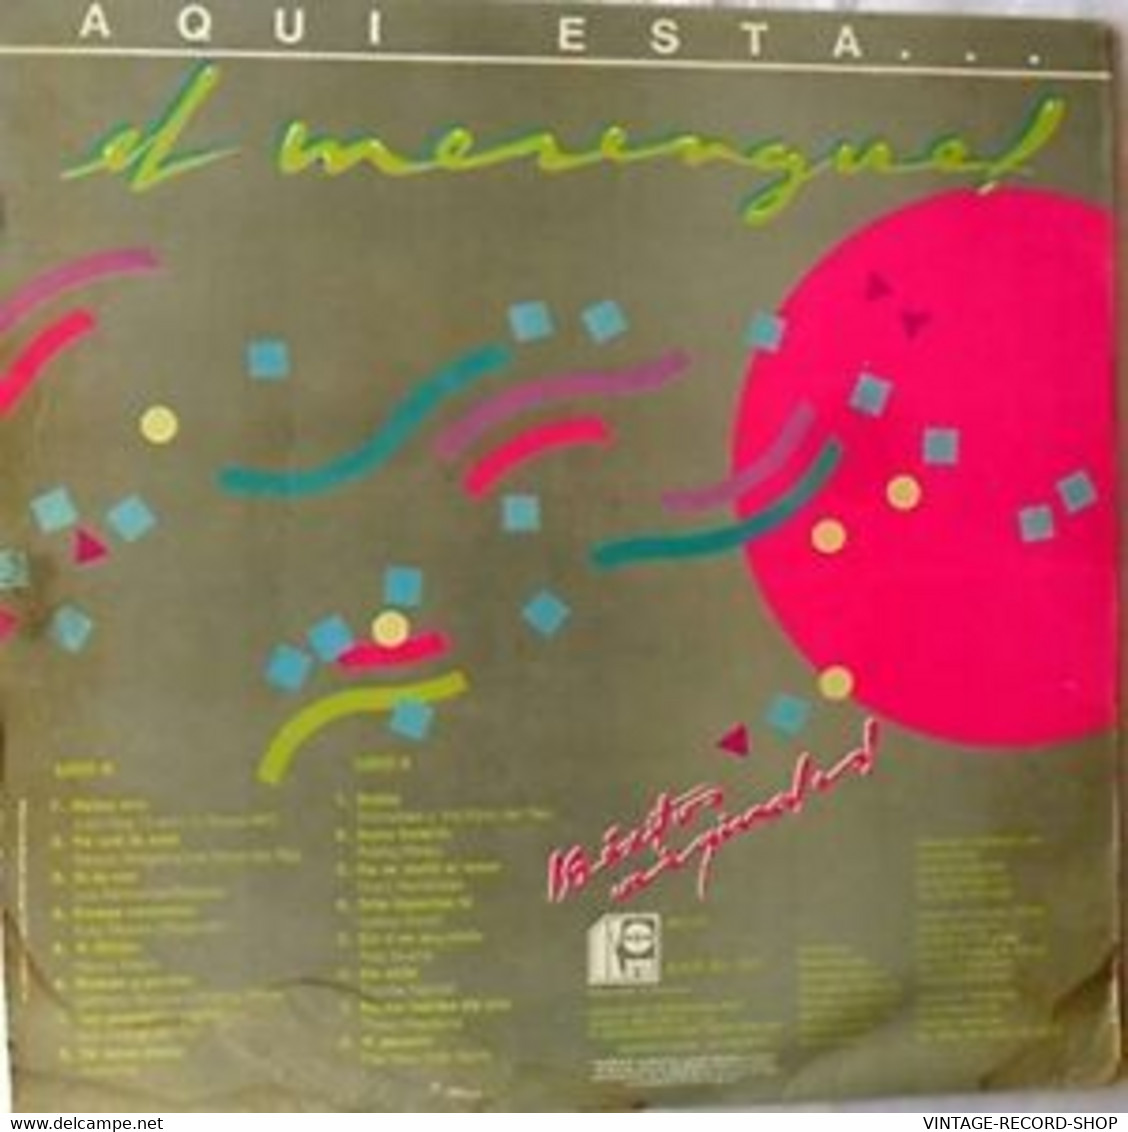 AQUI ESTA EL MERENGUE-LOS 16 EXITOS ORIGINALES-KAREN VENEZUELA 1995 VG++ - Sonstige - Spanische Musik